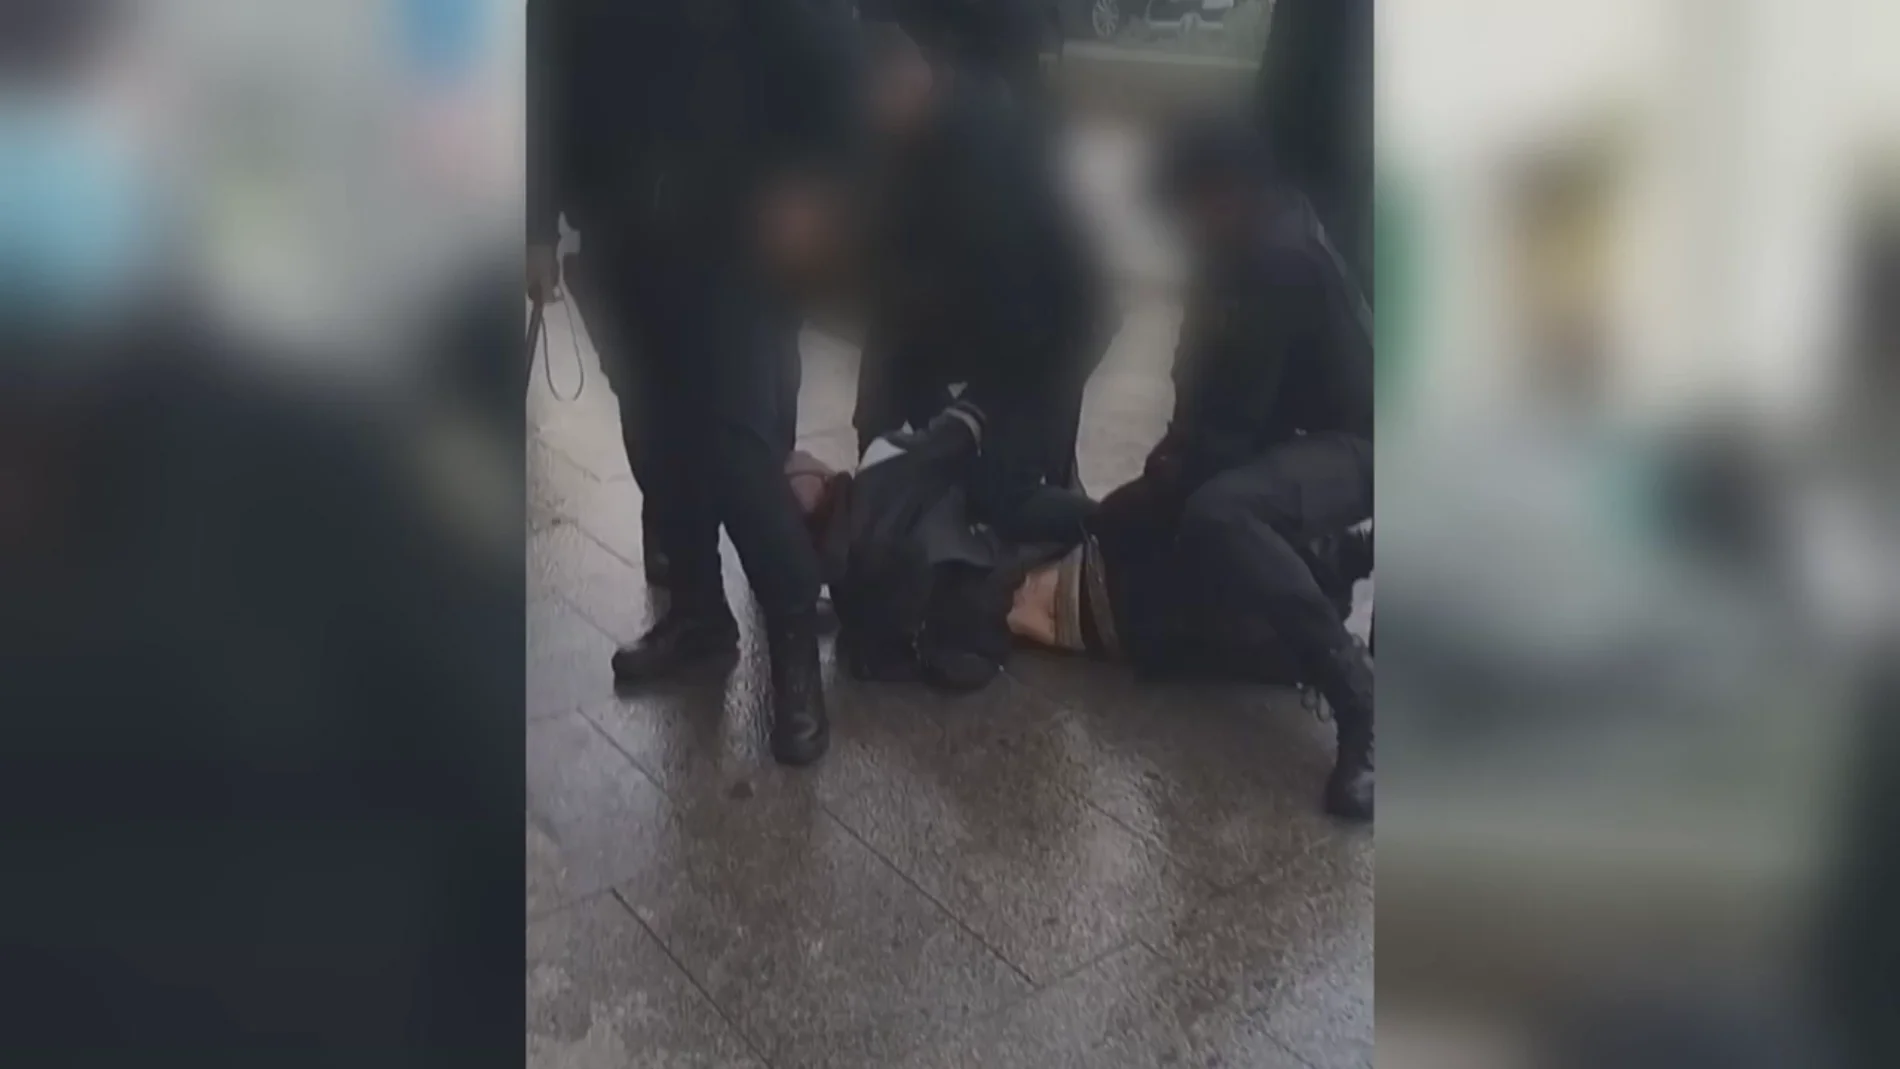 Graban una agresión policial a varios jóvenes en Madrid: 